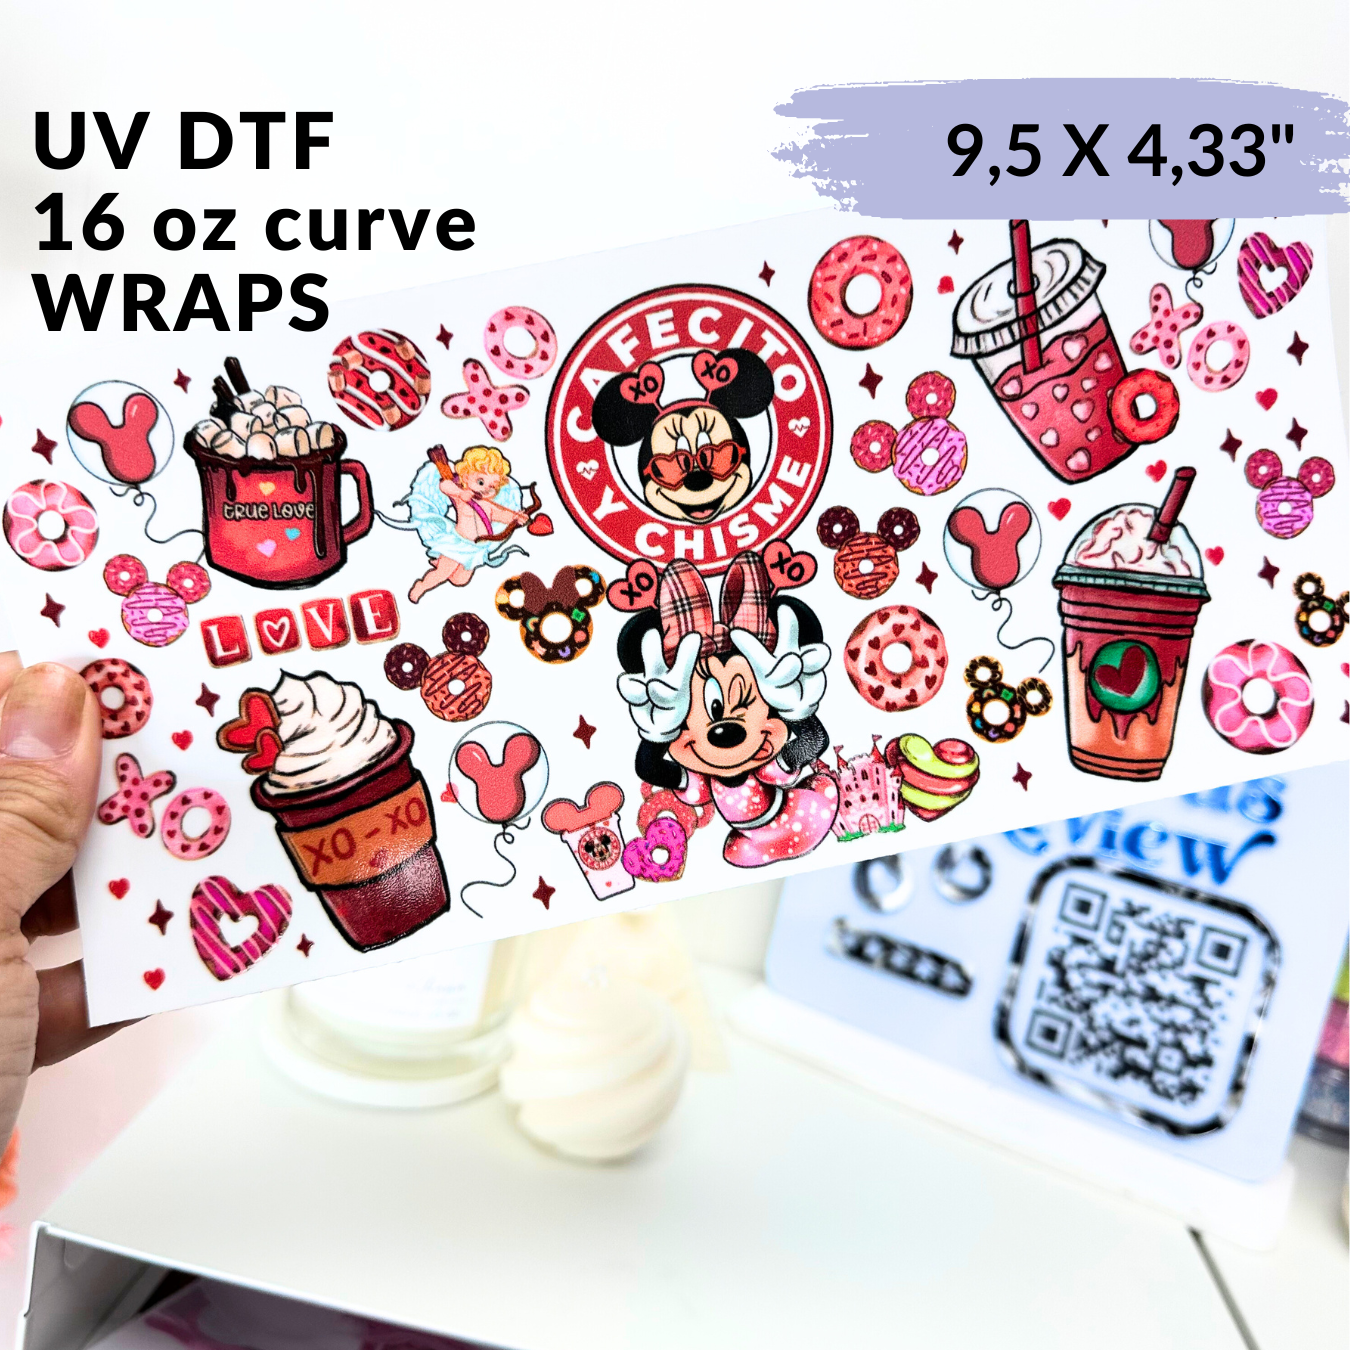 UV DTF - El Cafe de la ratona Libbey cup Wrap